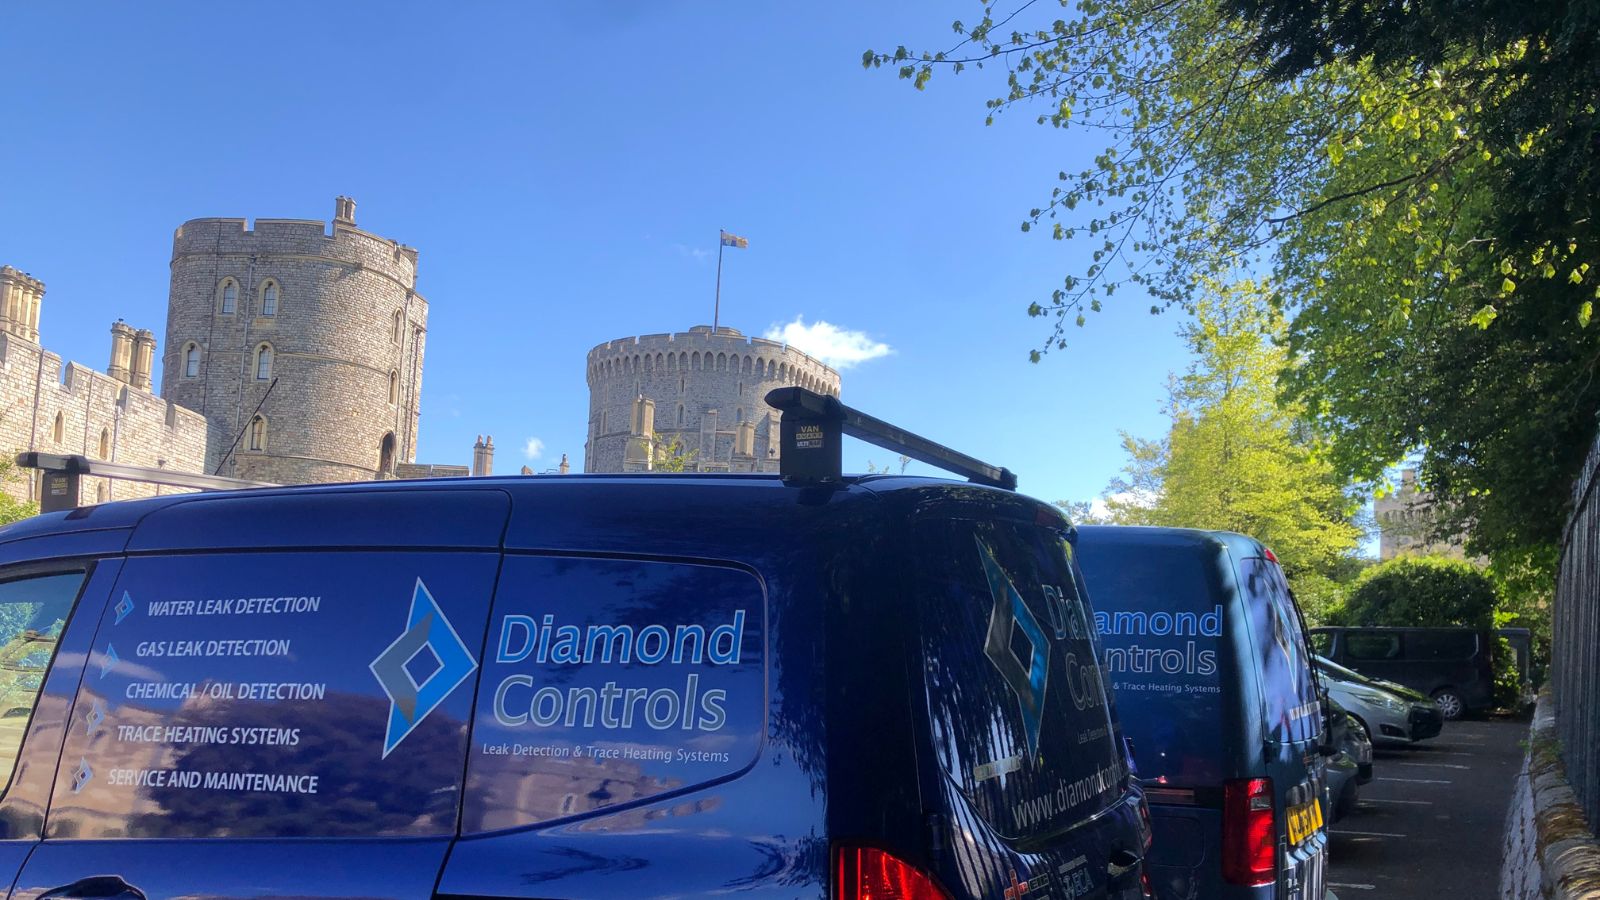 Windsor Castle Diamond Controls